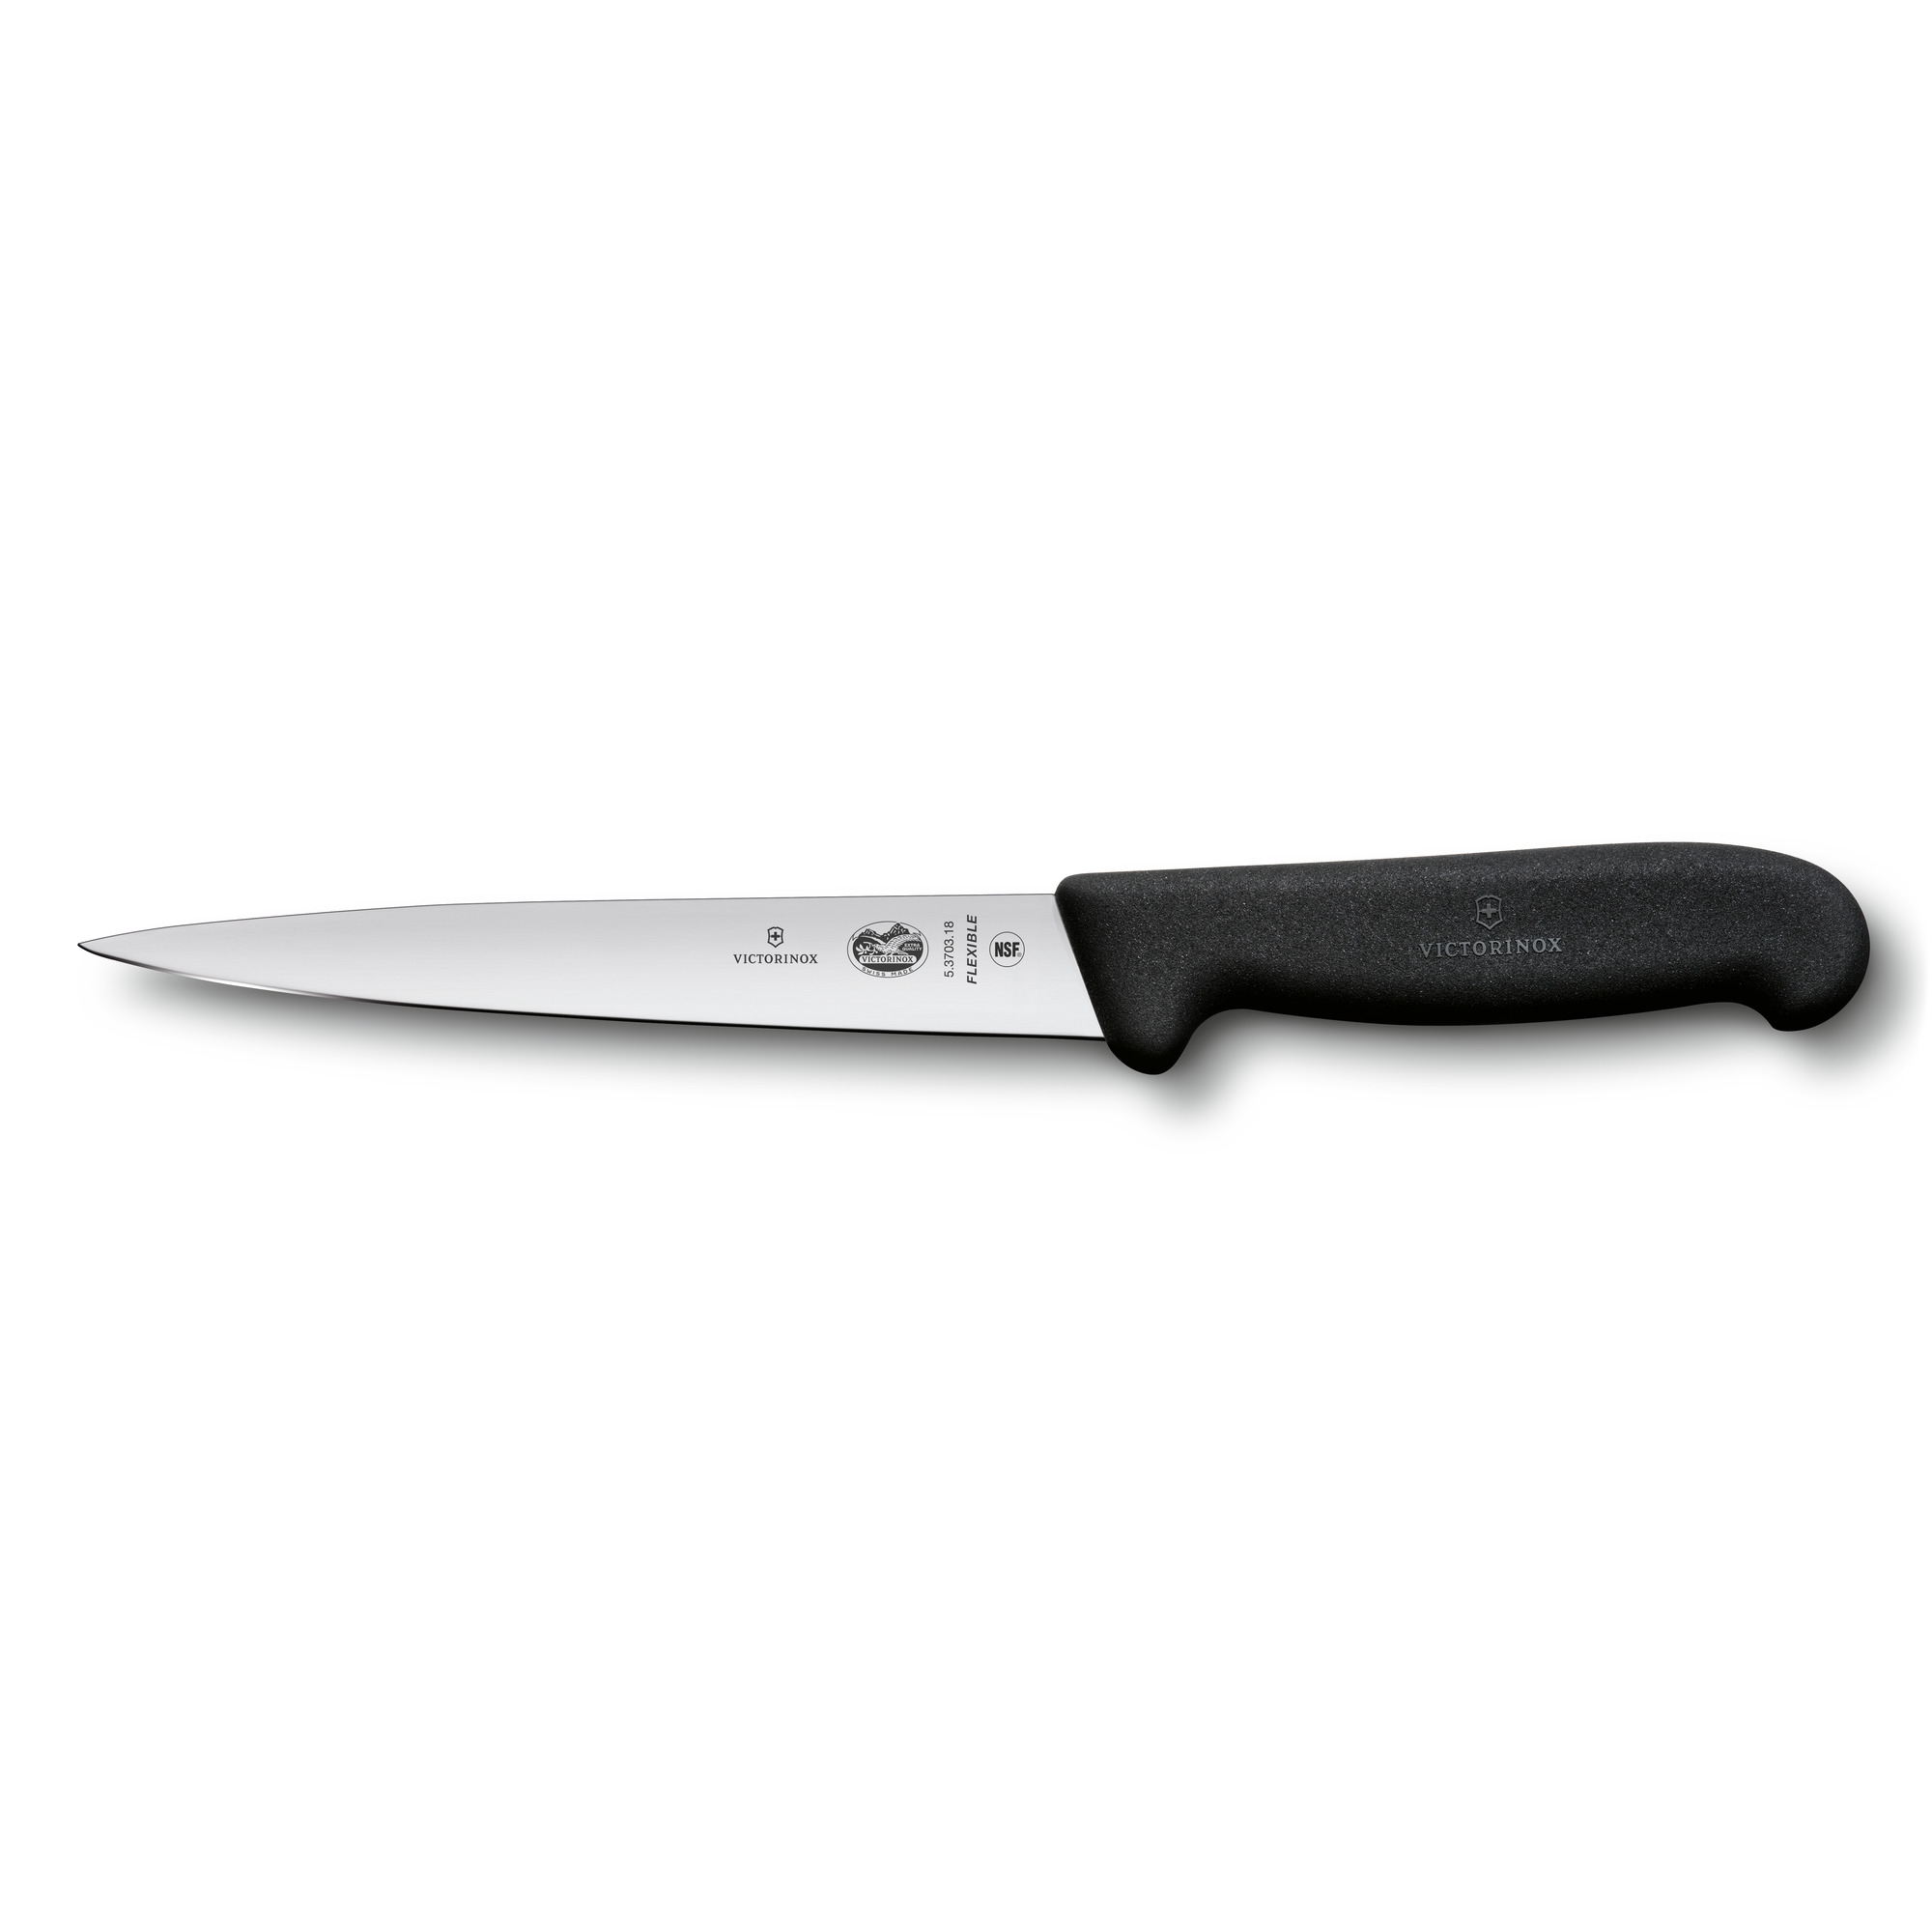 Нож филейный VICTORINOX Fibrox с гибким лезвием 18 см, чёрный, черный, термопластический эластомер (tpe)